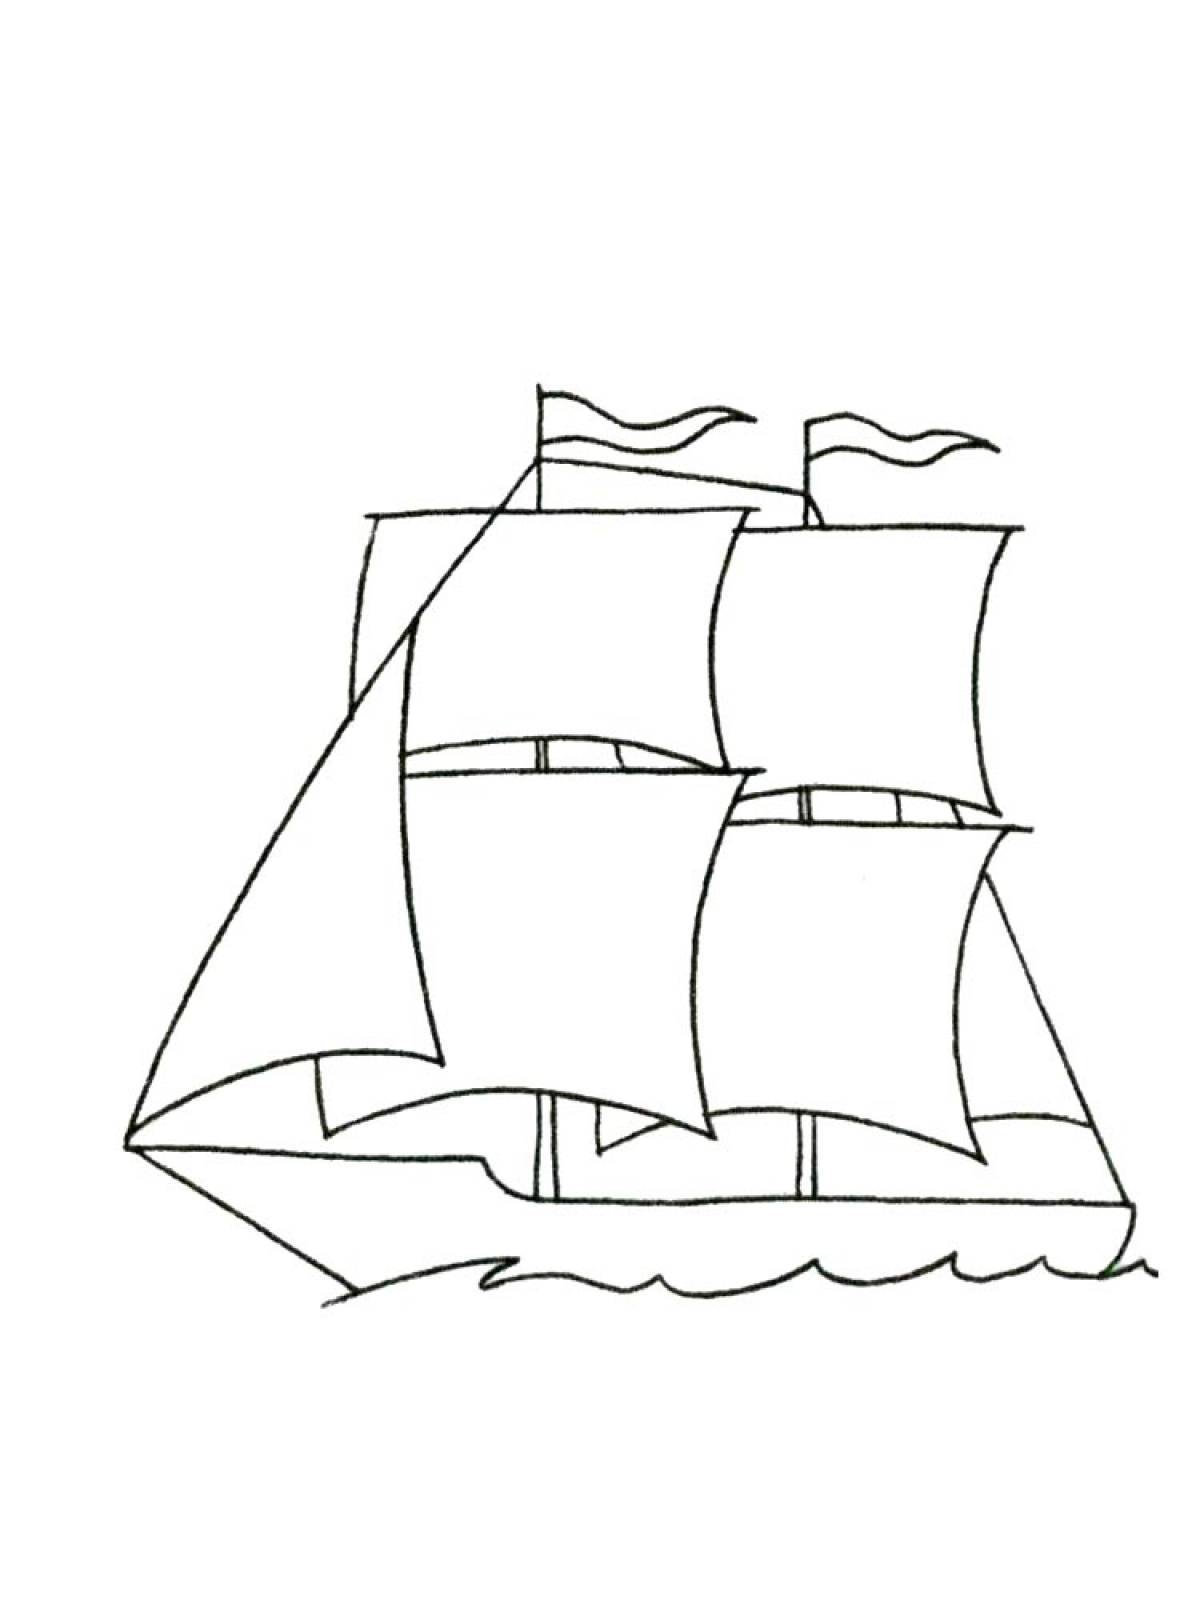 Алые паруса рисунок легко. Корабль рисунок. Алые паруса раскраска. Корабль рисунок карандашом. Легкие рисунки корабли для детей.